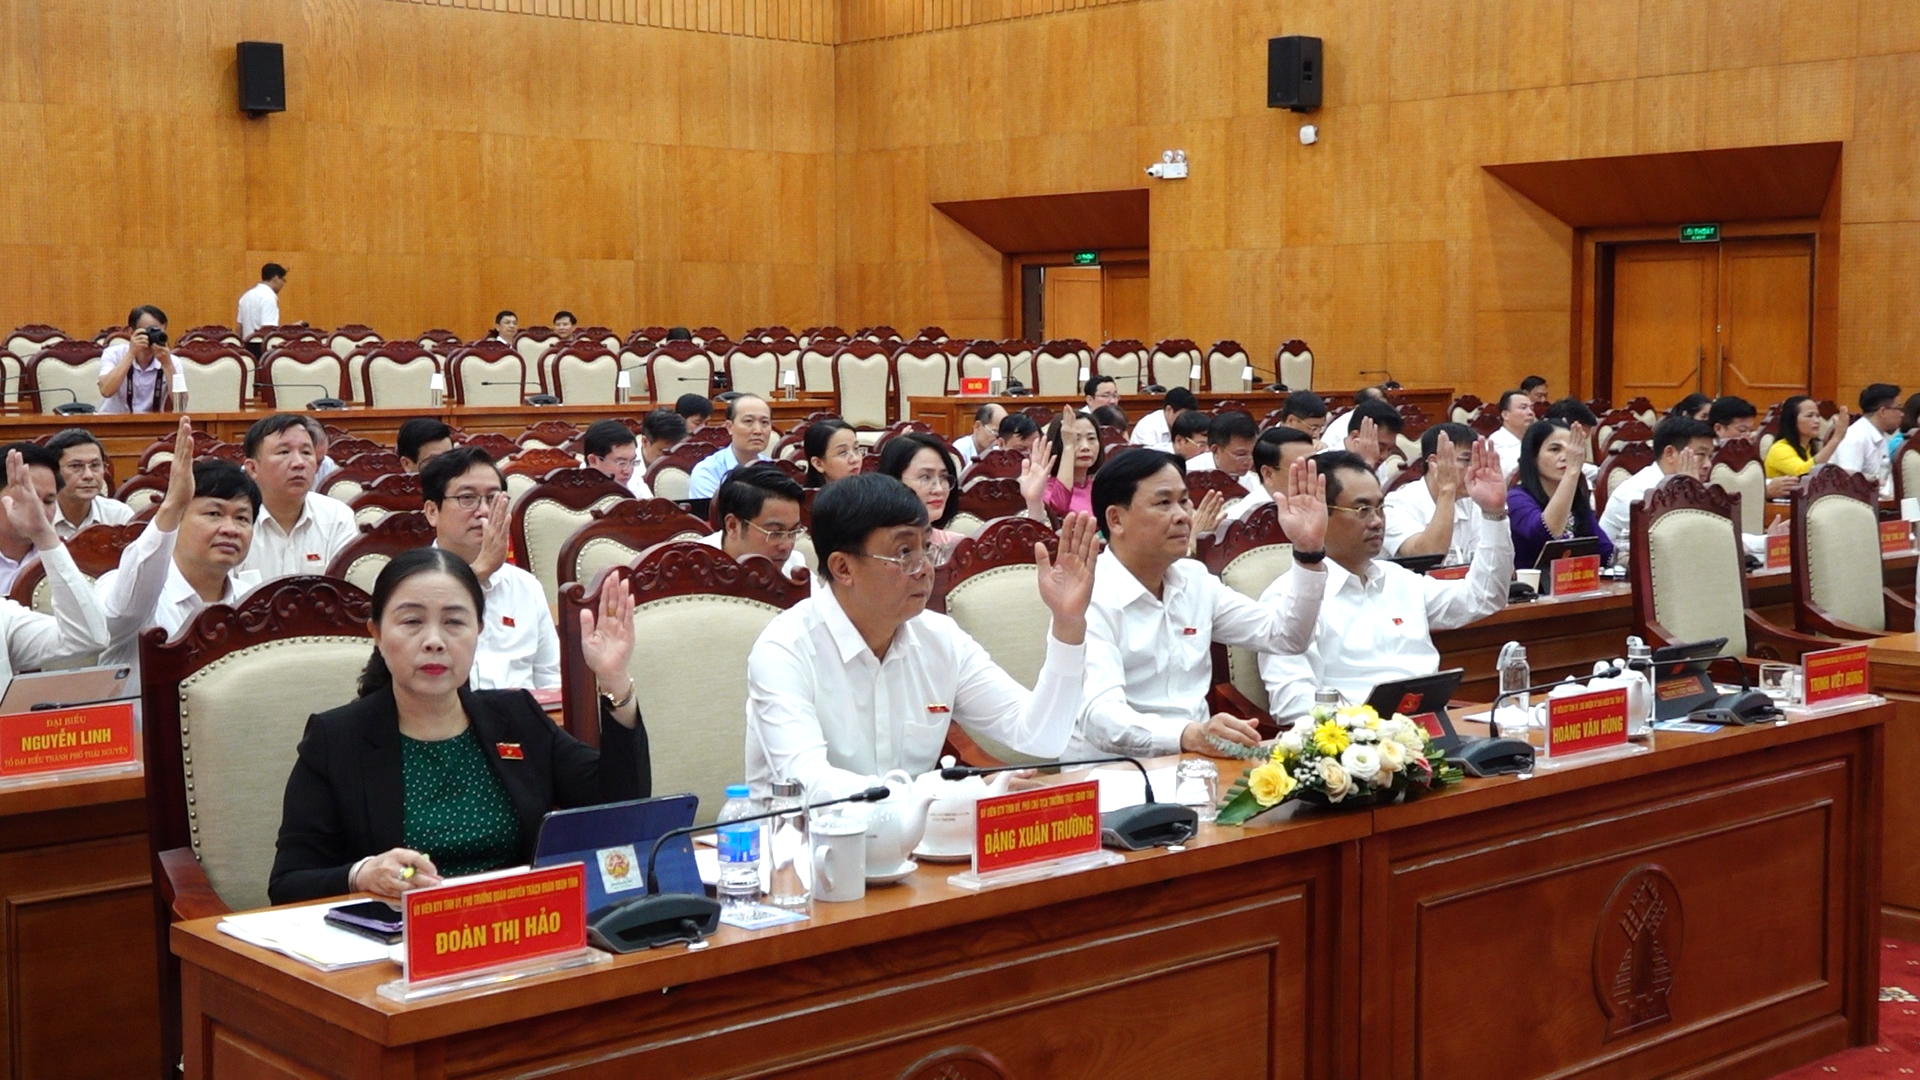 Các đại biểu thông qua nghị quyết tại kỳ họp. Ảnh: Quang Linh.